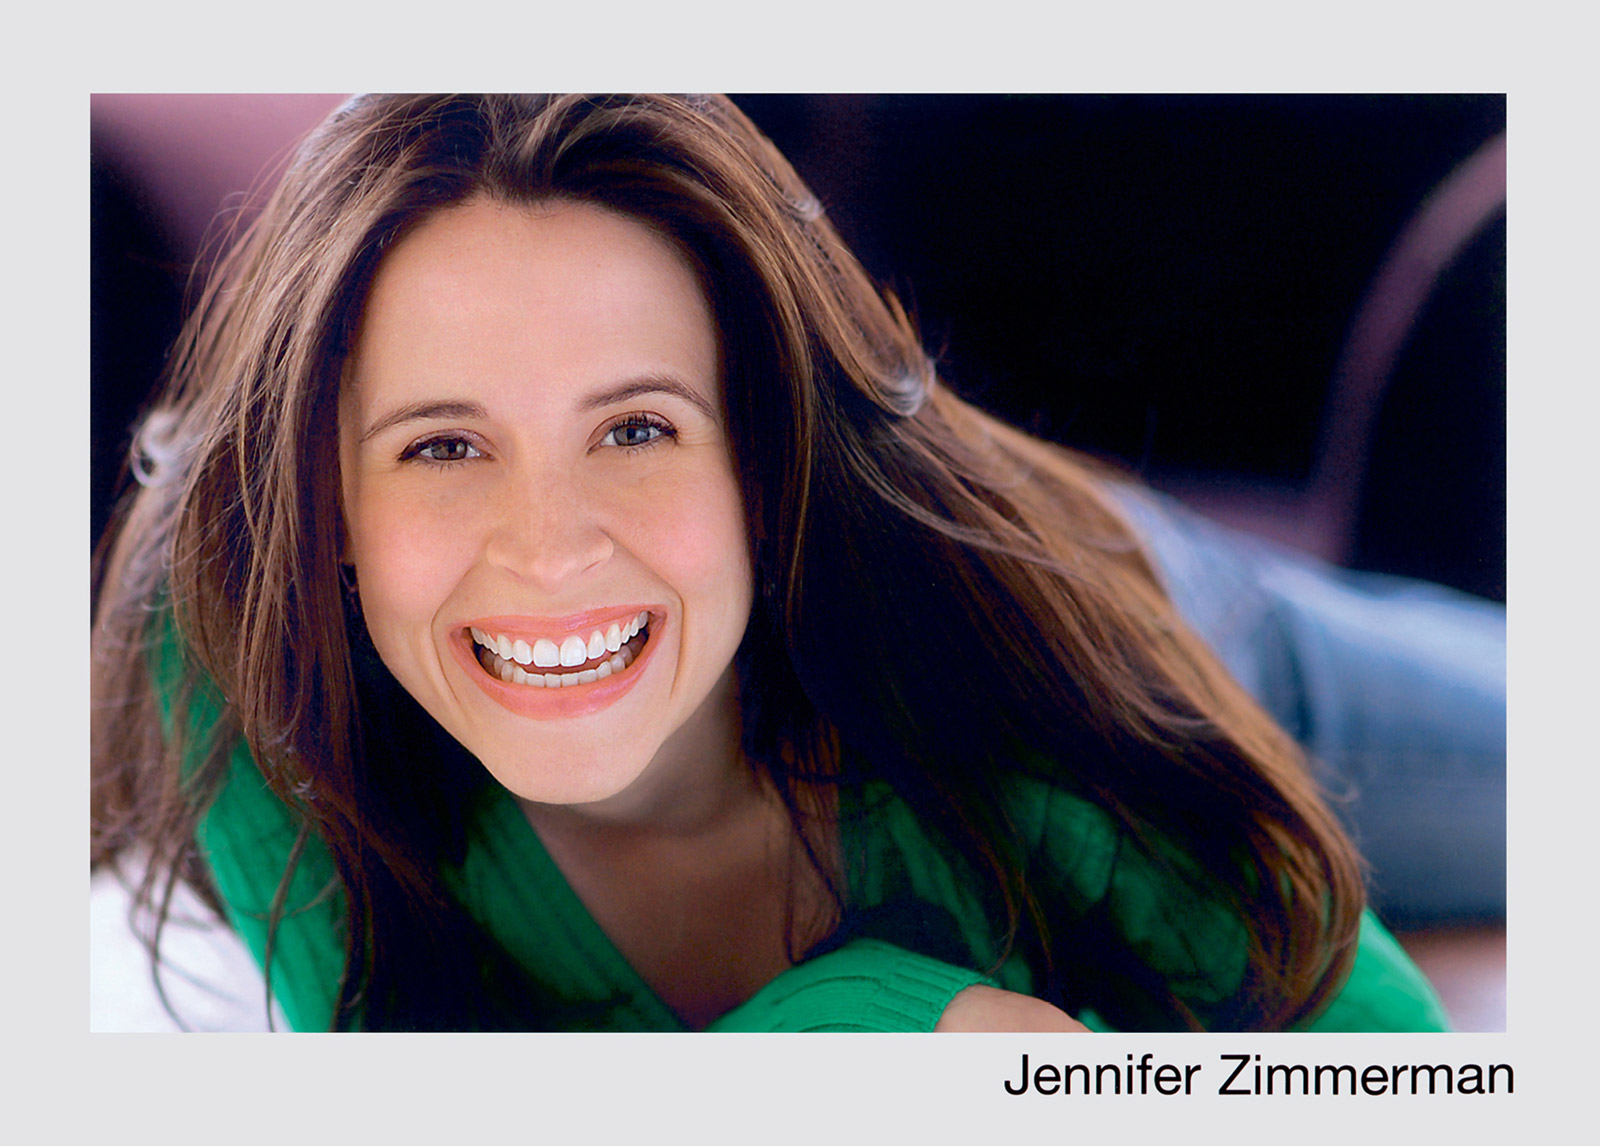 A headshot of Jennifer.